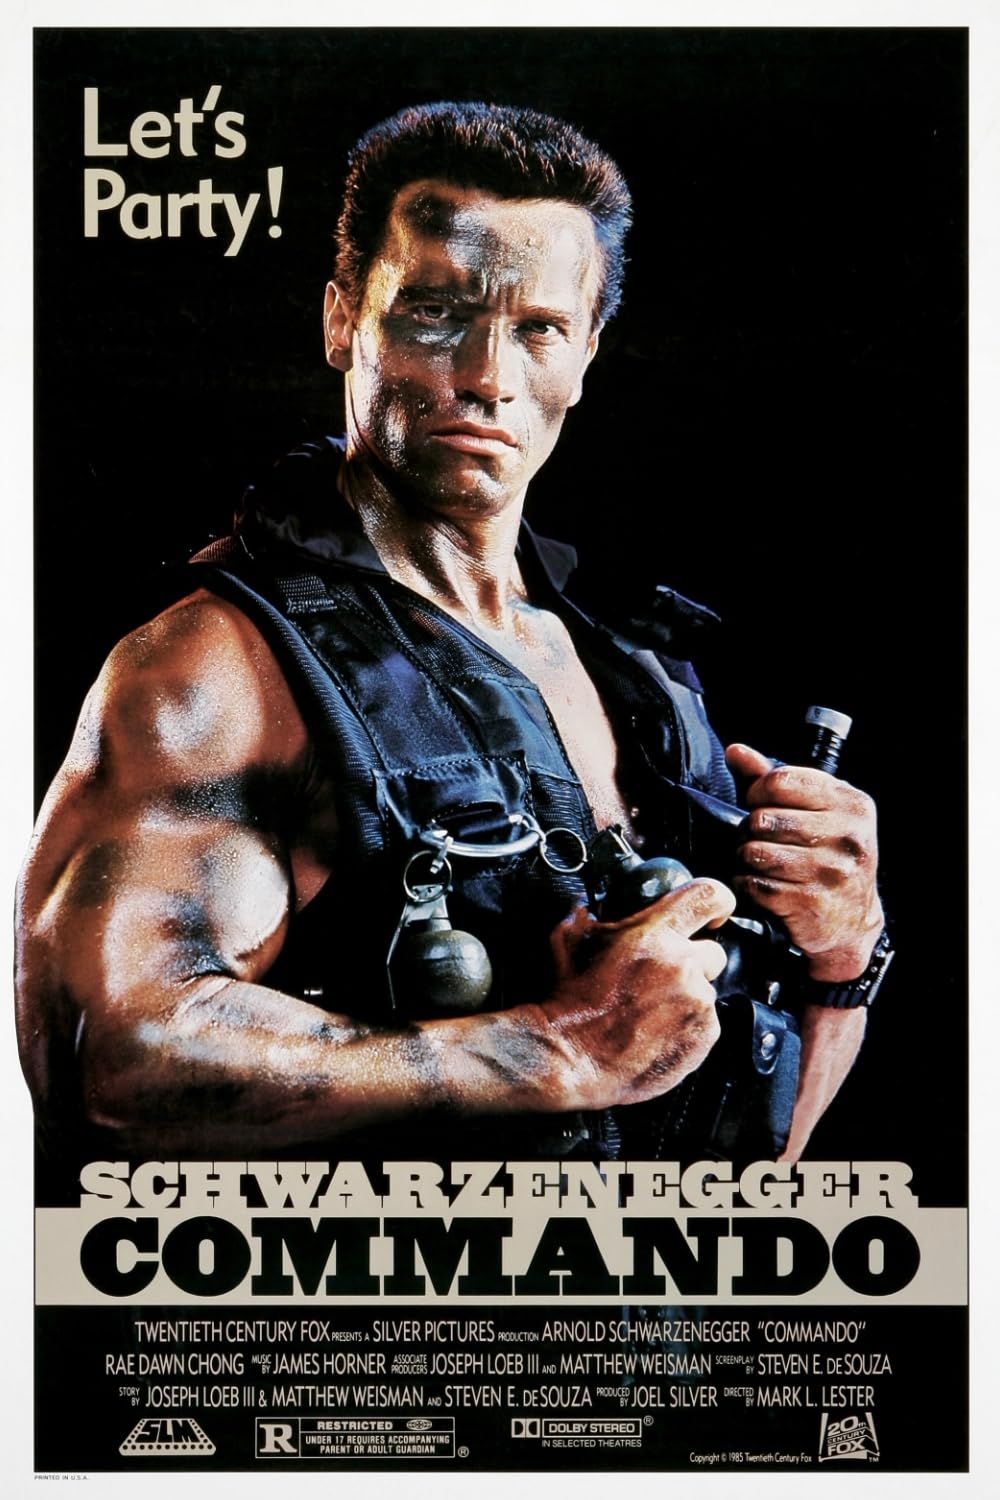 Arnold Schwarzenegger in Commando (1985) official poster